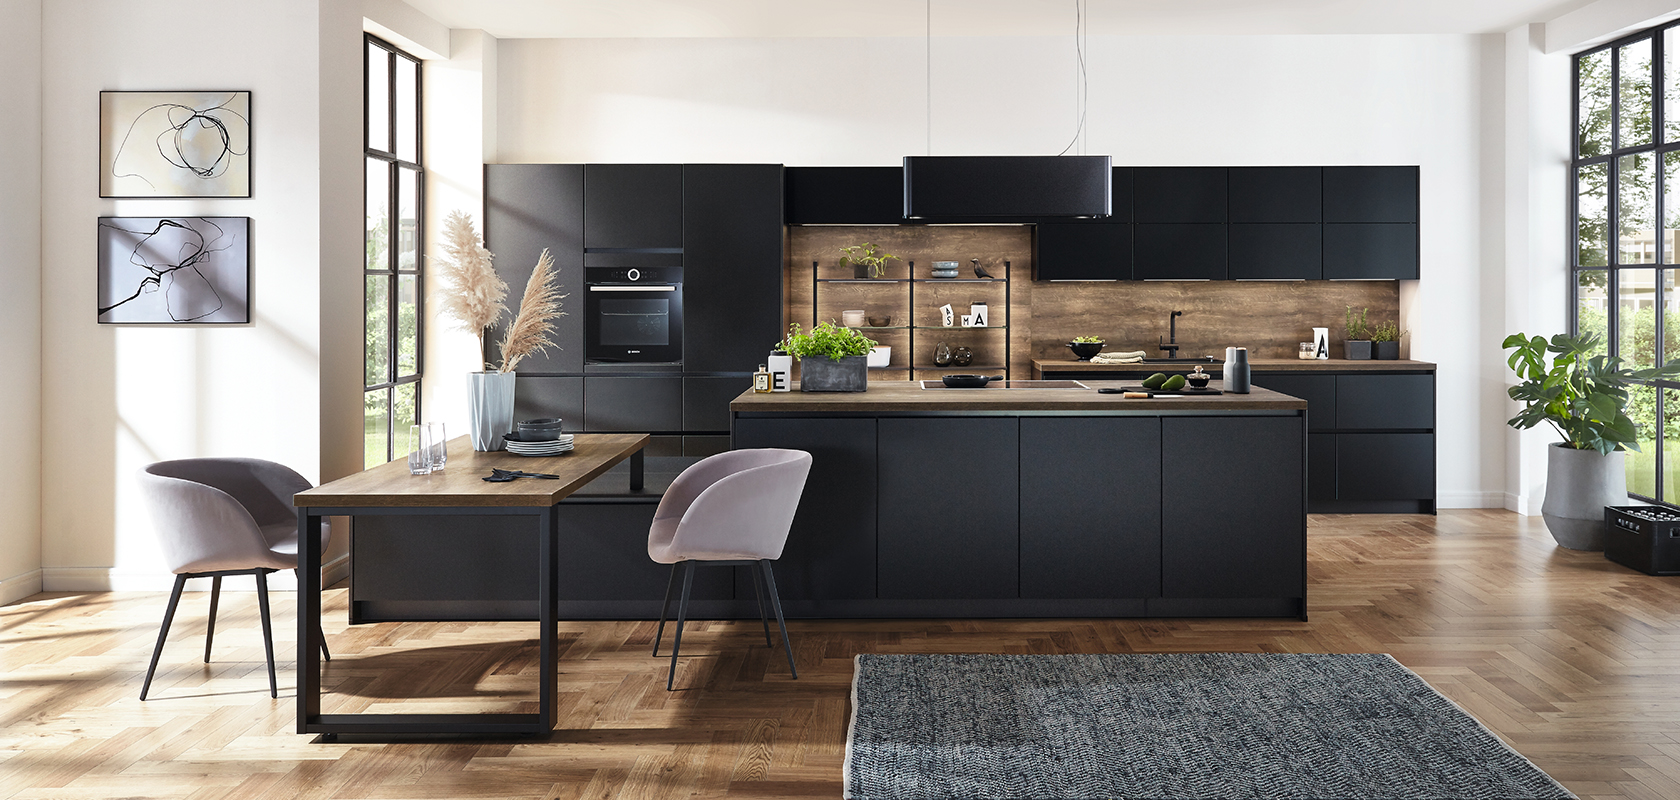 Interni di cucina moderna che mostrano eleganti armadi neri, accenti in legno e un'isola spaziosa completata dalla luce naturale delle grandi finestre.